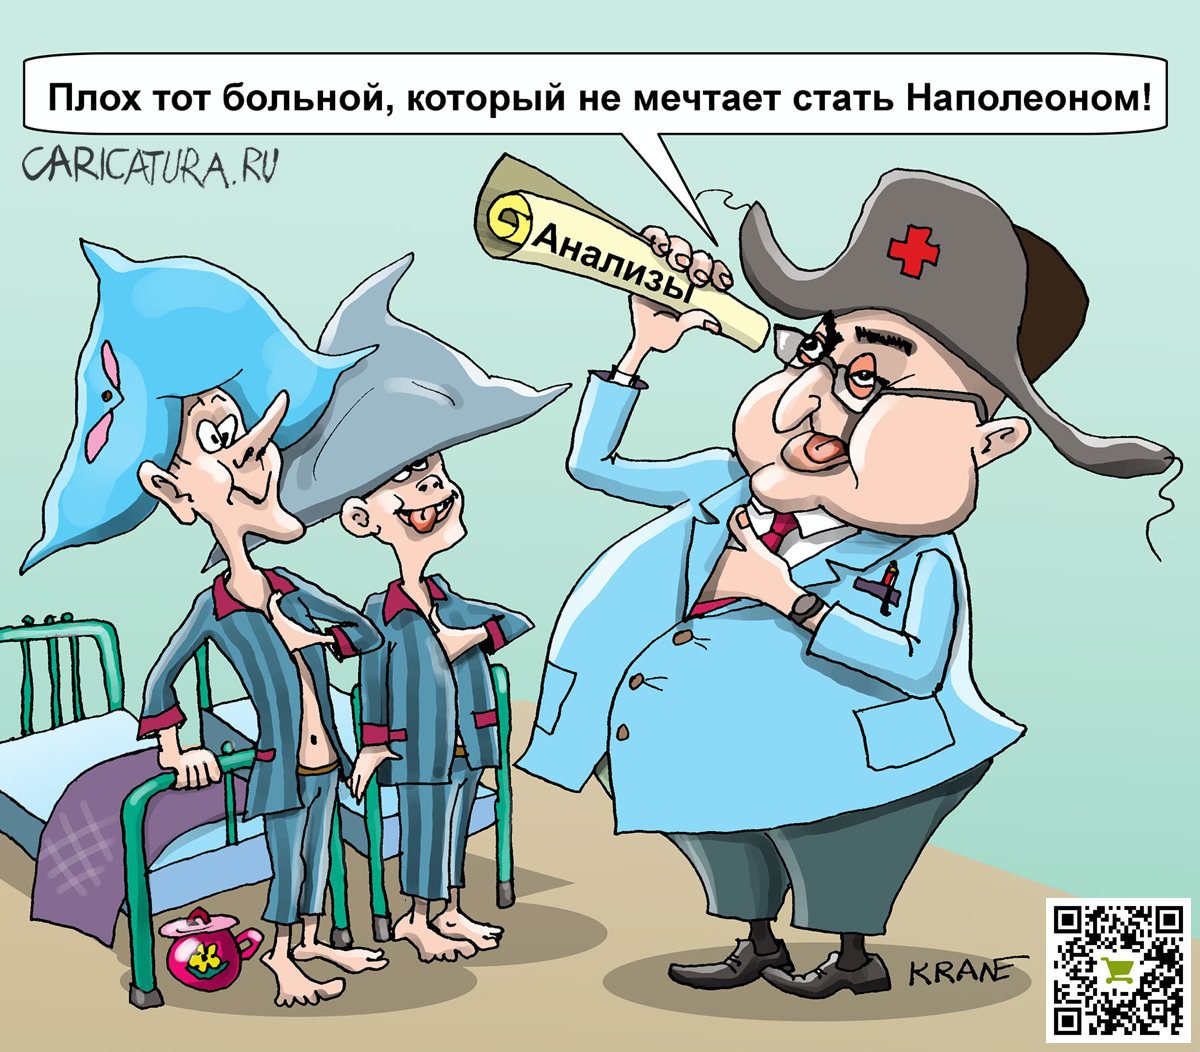 Карикатура "Странные люди или когда "не все дома"", Евгений Кран